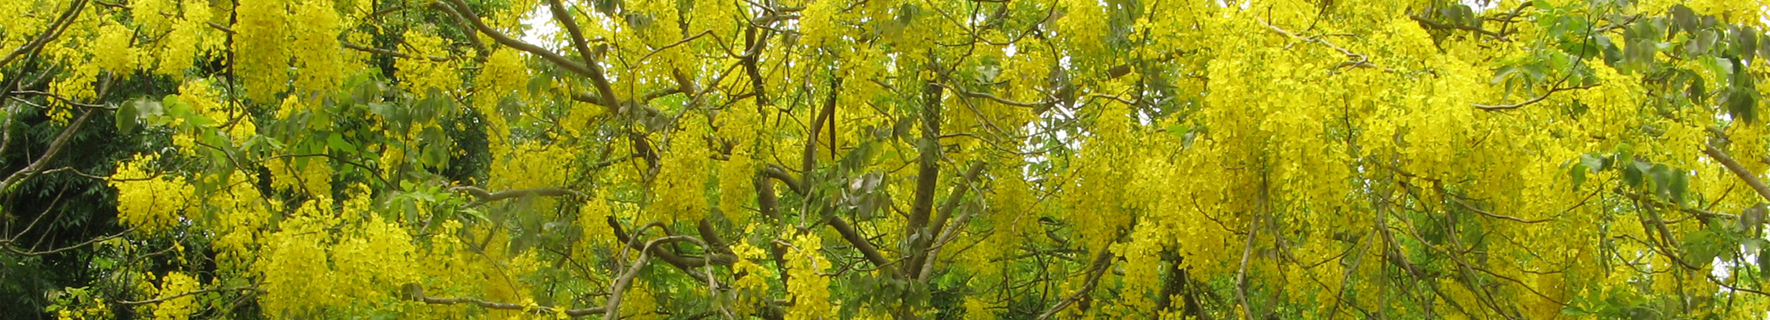 黃風鈴樹近照